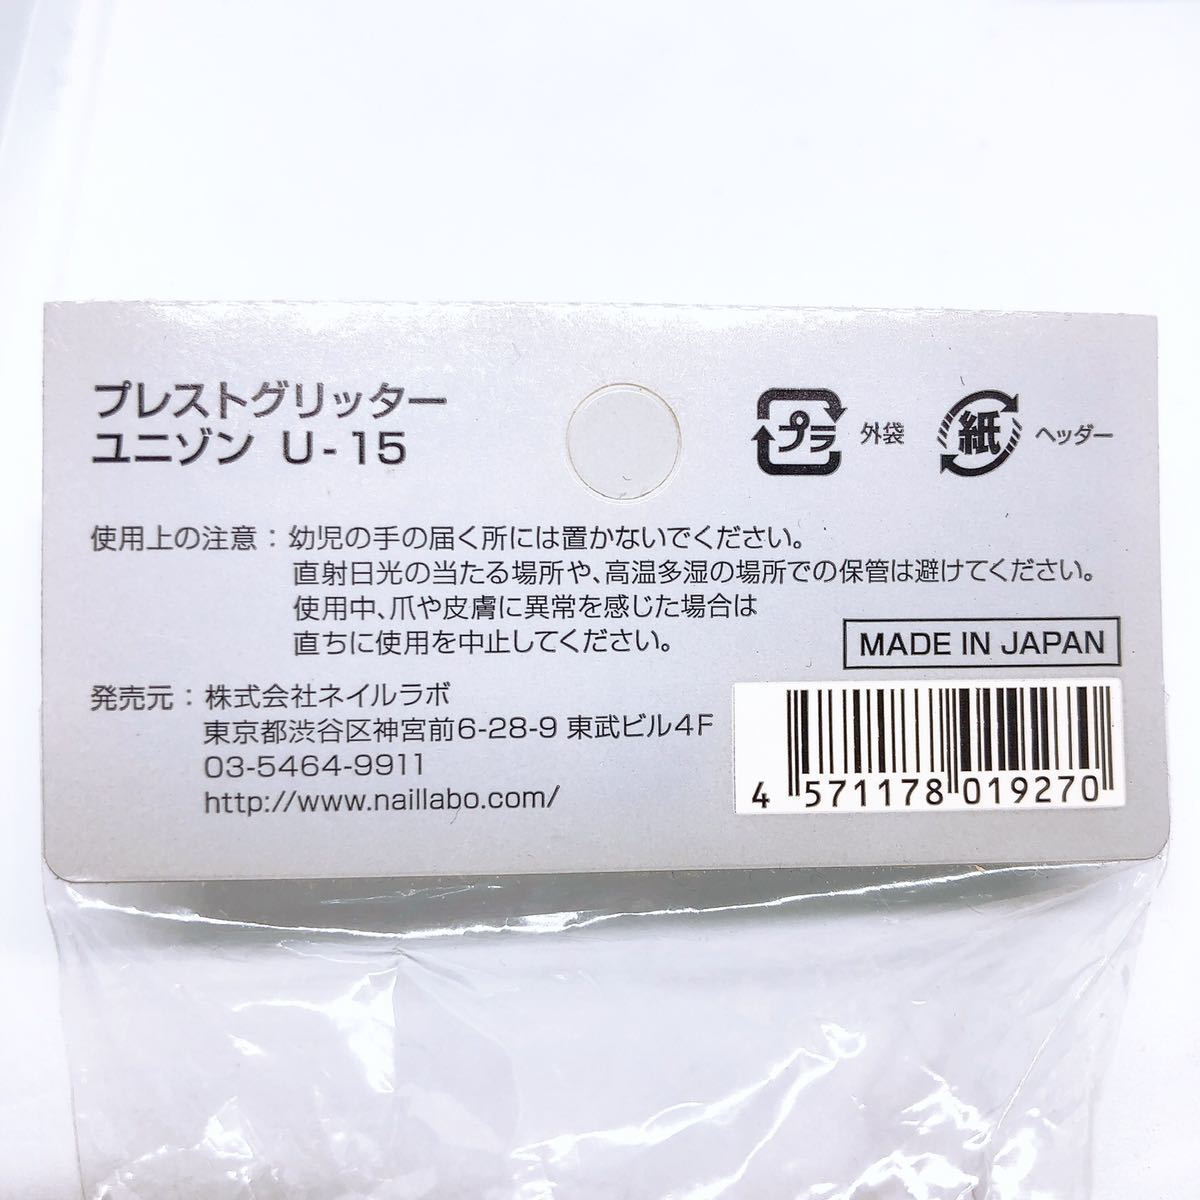  сделано в Японии высокое качество Puresuto украшен блестками [ новый товар 1.2g] лиловый нейл-арт 